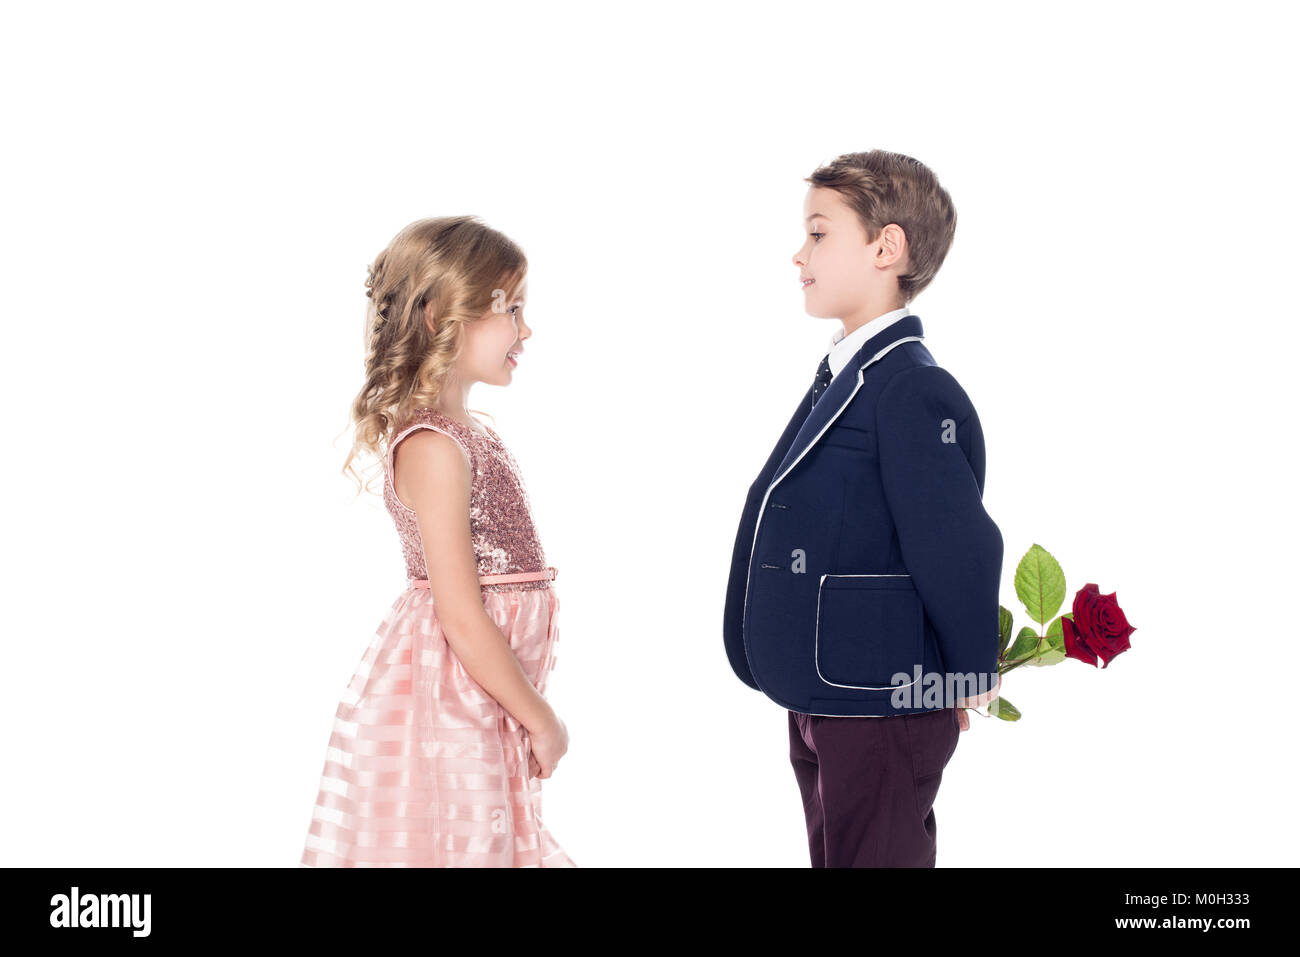 Vue latérale du garçon à la mode in suit holding rose fleur et à la recherche à l'adorable petite fille en robe rose isolated on white Banque D'Images